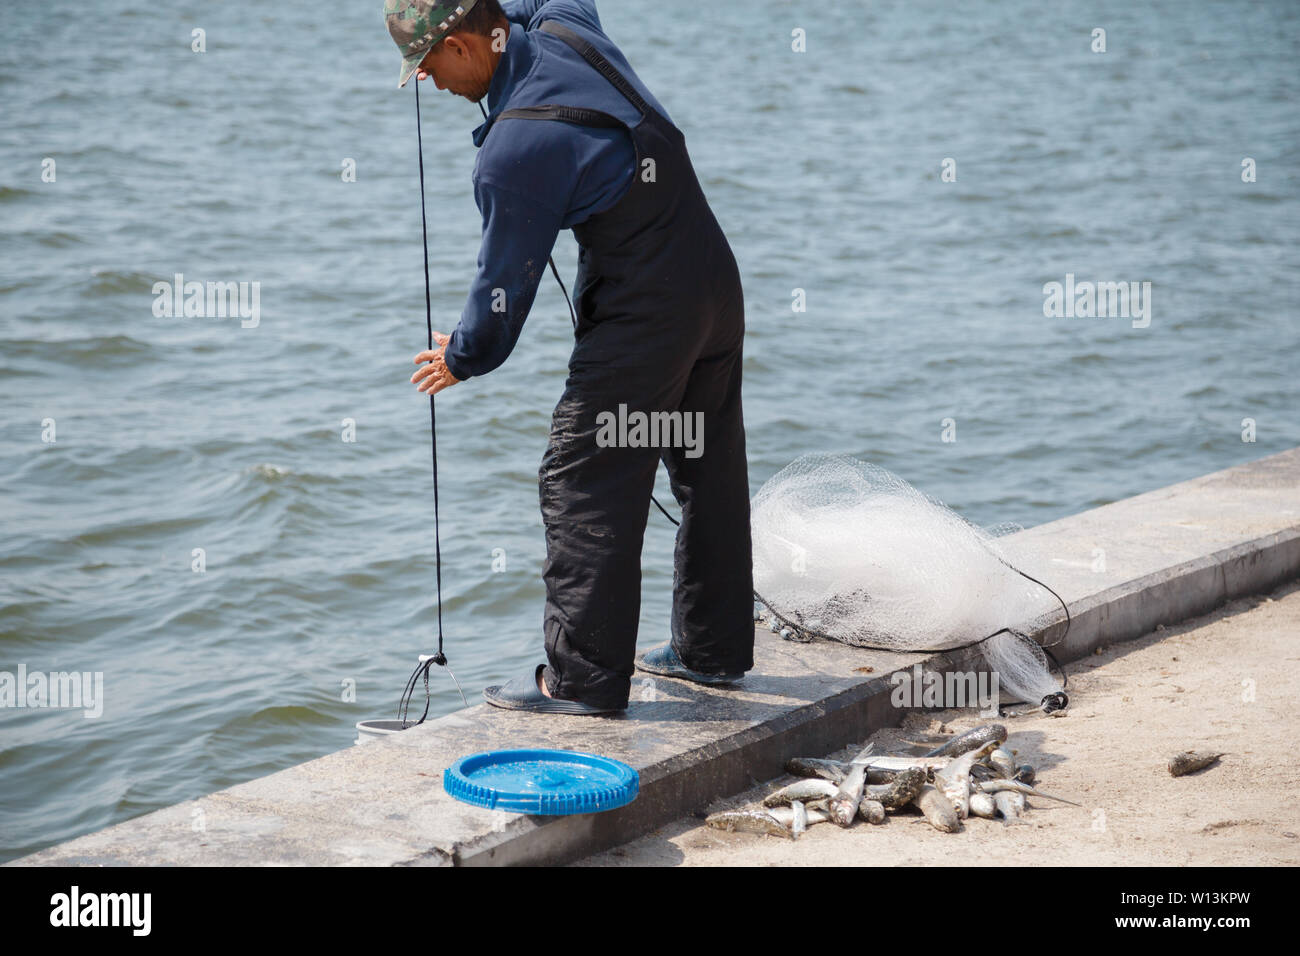 Un homme de mettre de l'eau dans le seau pour le poisson qu'il vient de prendre avec filet de pêche en rivière banane off Cocoa Beach, Floride, USA. Banque D'Images